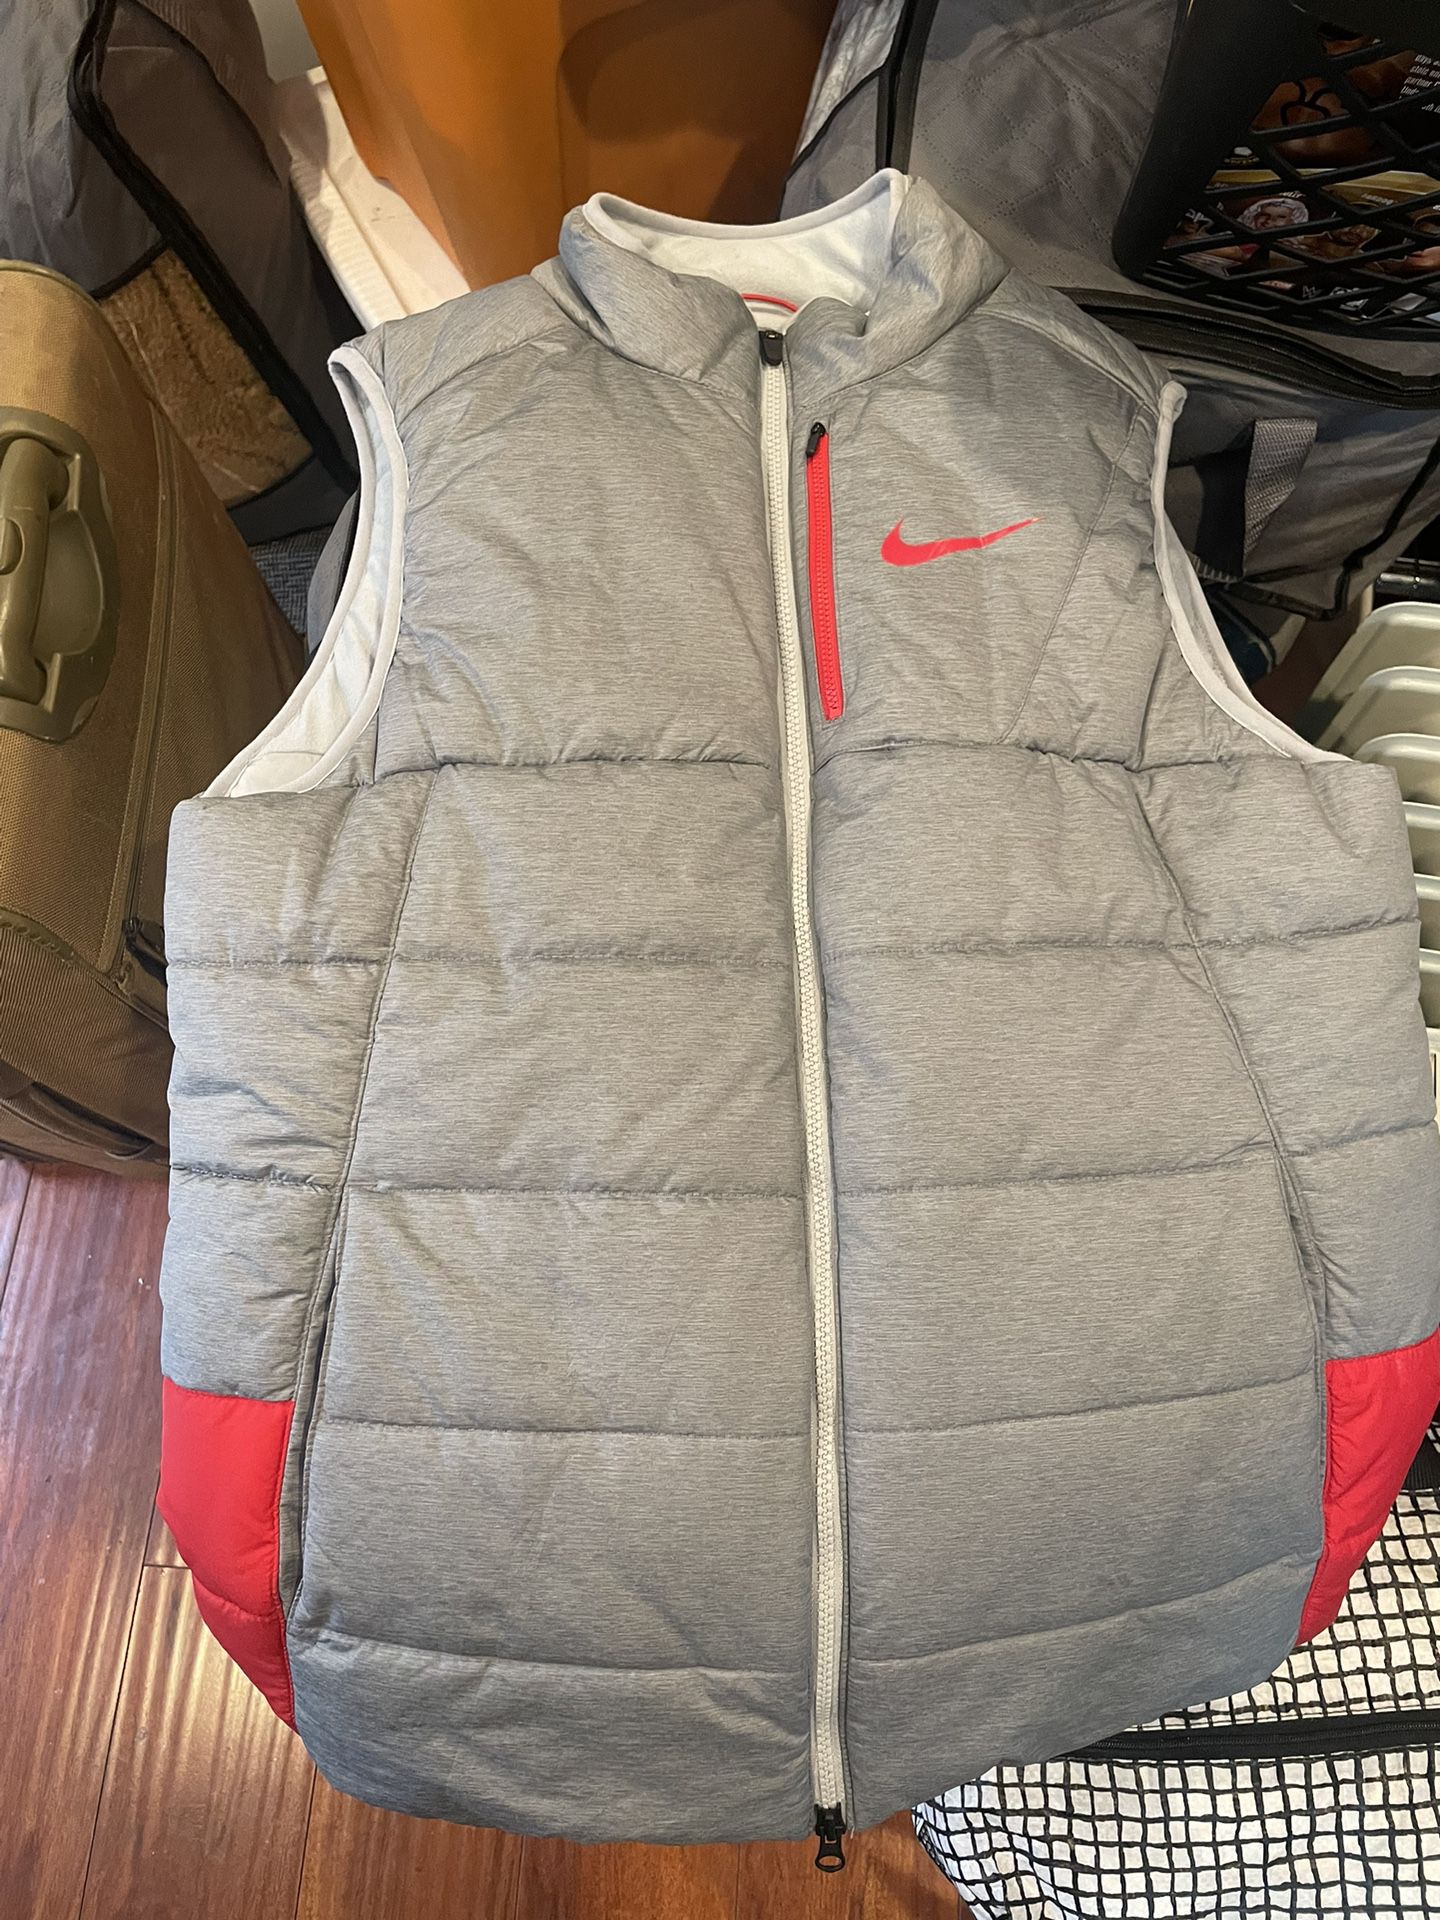 Nike Sideline Hyperwarm Therma Full ZIP Vest Large